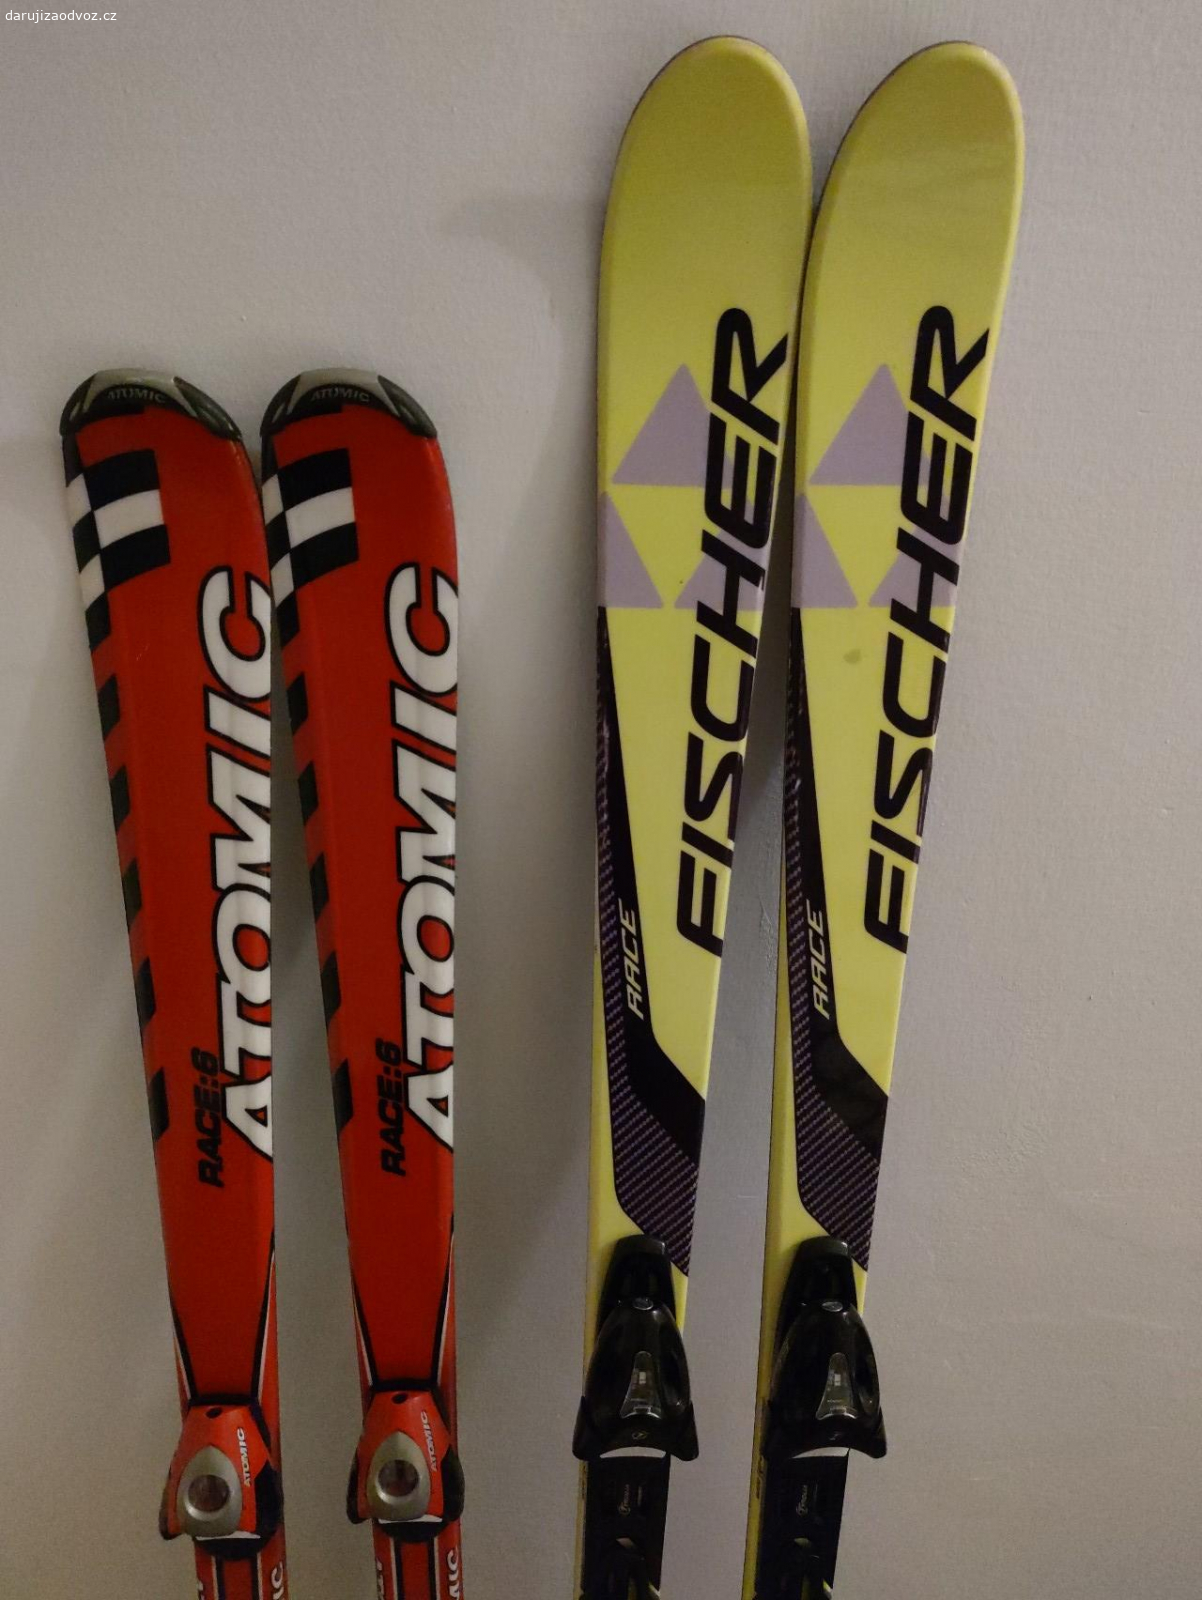 Starší lyže. Dvoje lyže délky 160 cm a 145 cm.